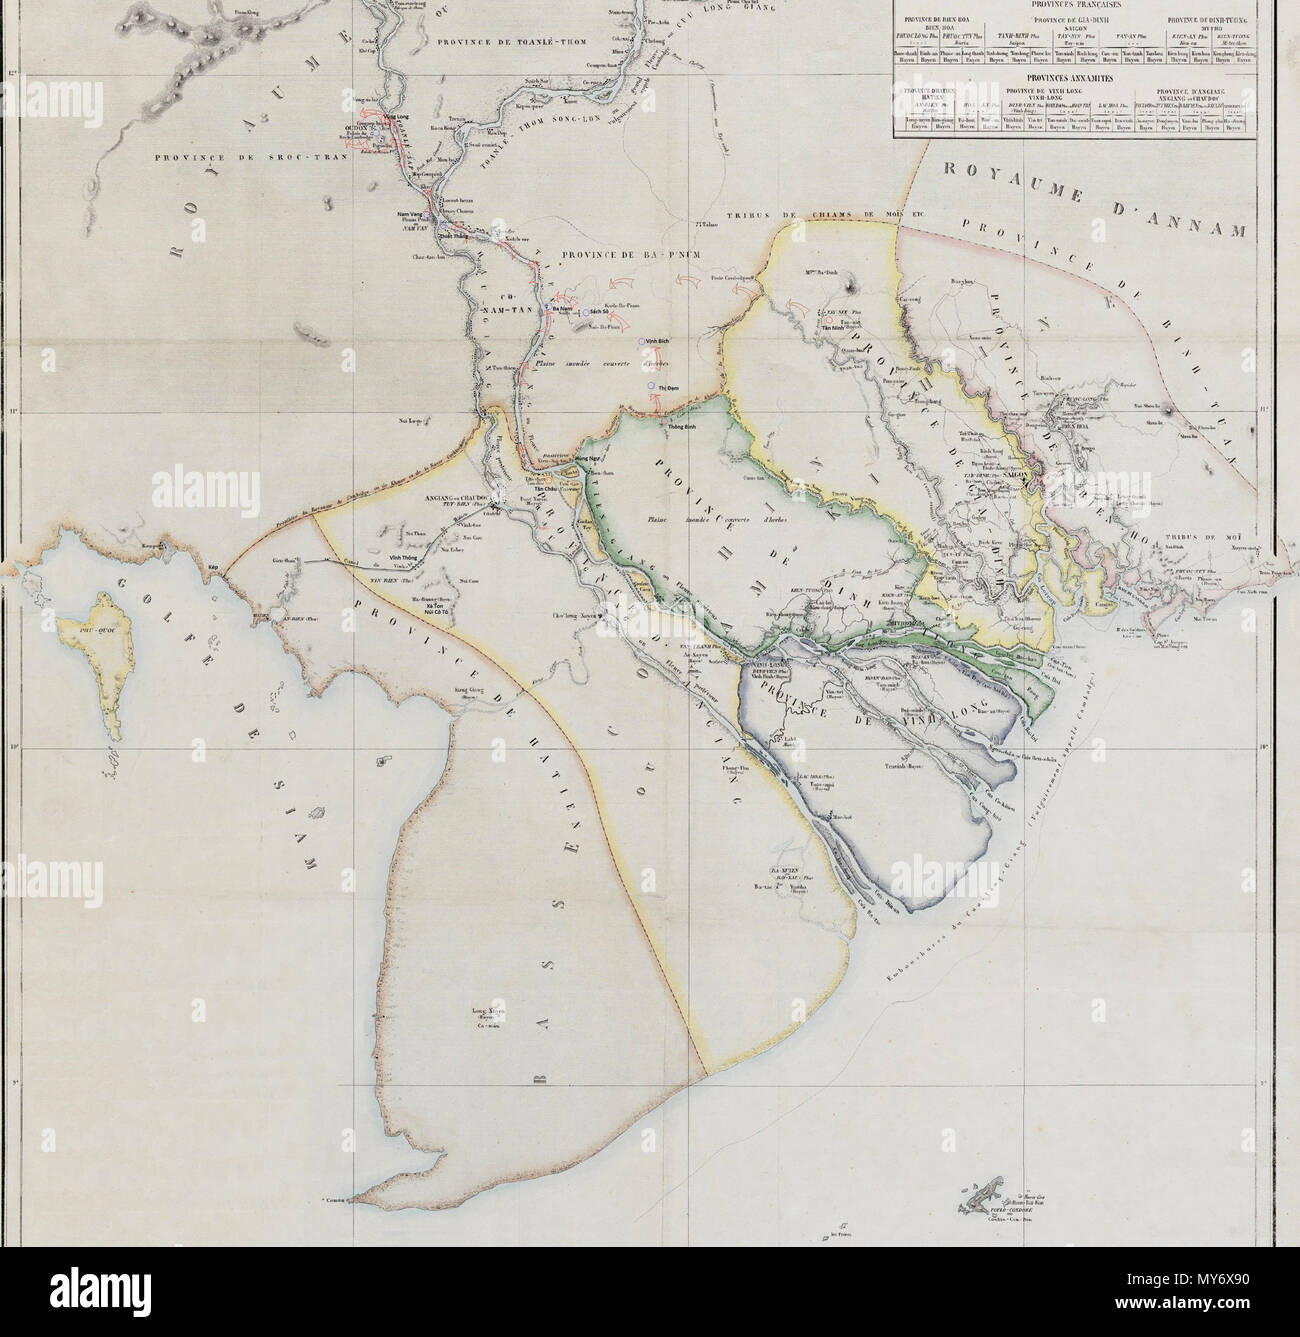 . Tiếng Việt: Bản đồ diễn biến phần sau (từ tháng 6 đến tháng 12 năm 1845) của chiến tranh Việt-Xiêm (1841=1845). ngày 2 tháng 12 năm 2014.. Doãn Hiệu 550 VietXiem1845 Stock Photo